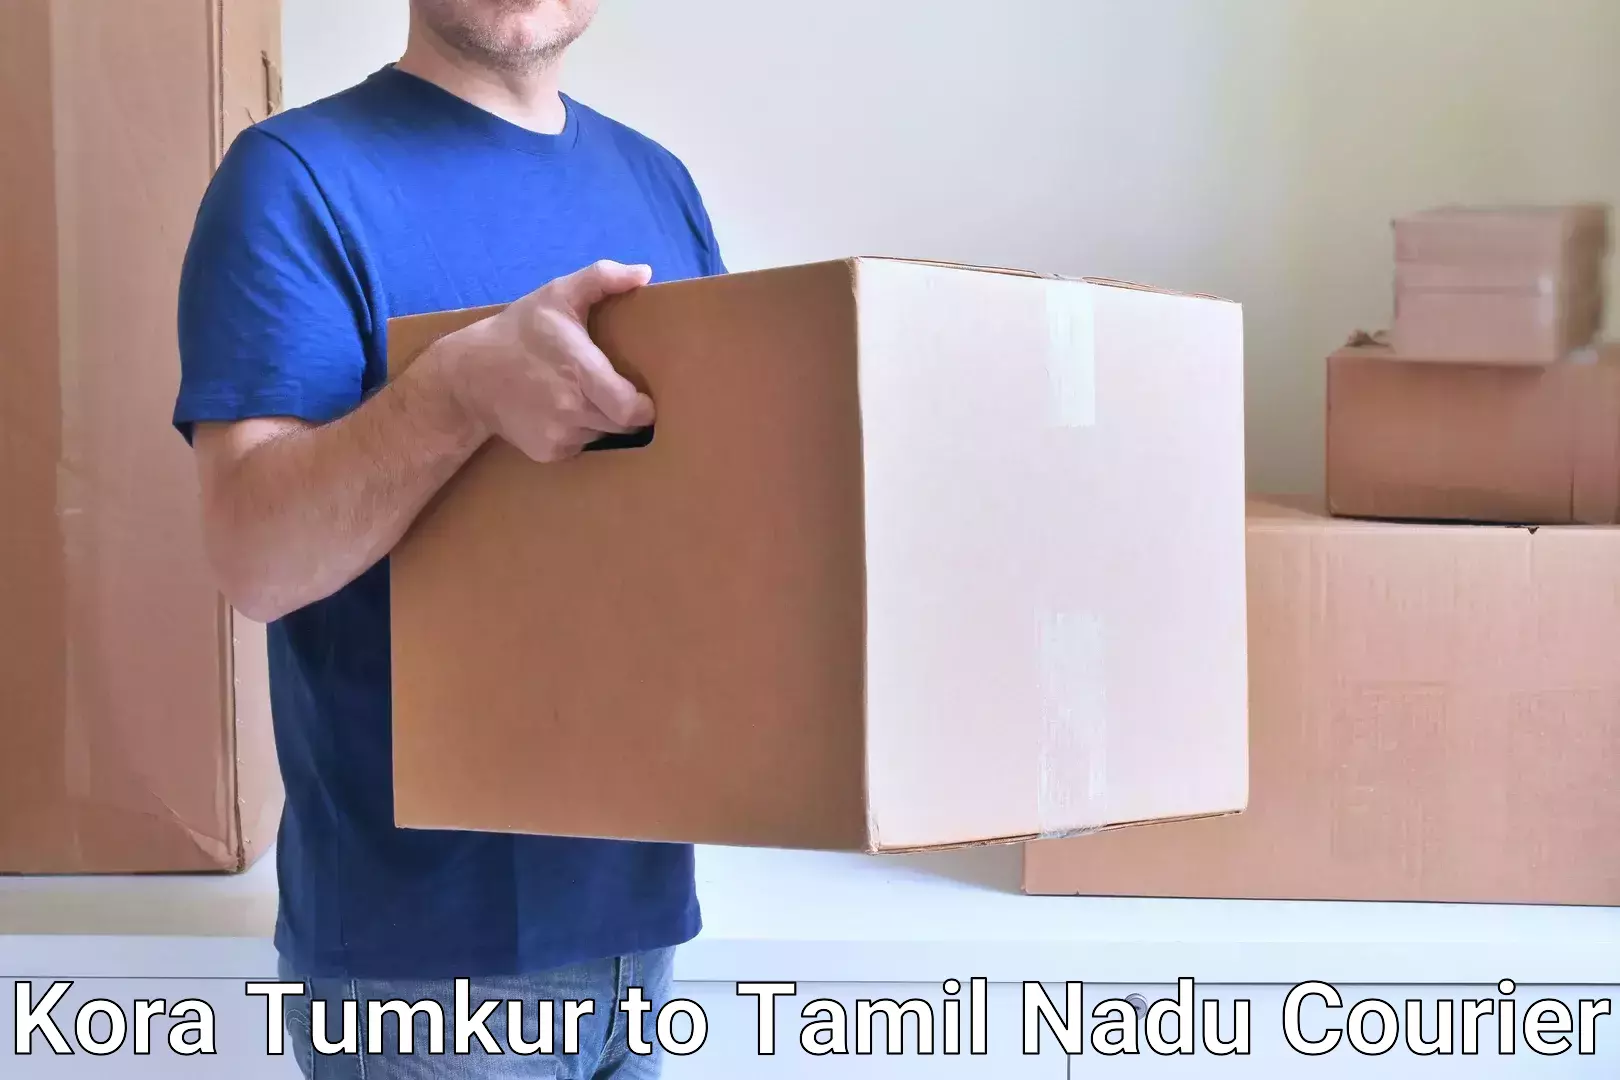 Bulk courier orders Kora Tumkur to Viralimalai